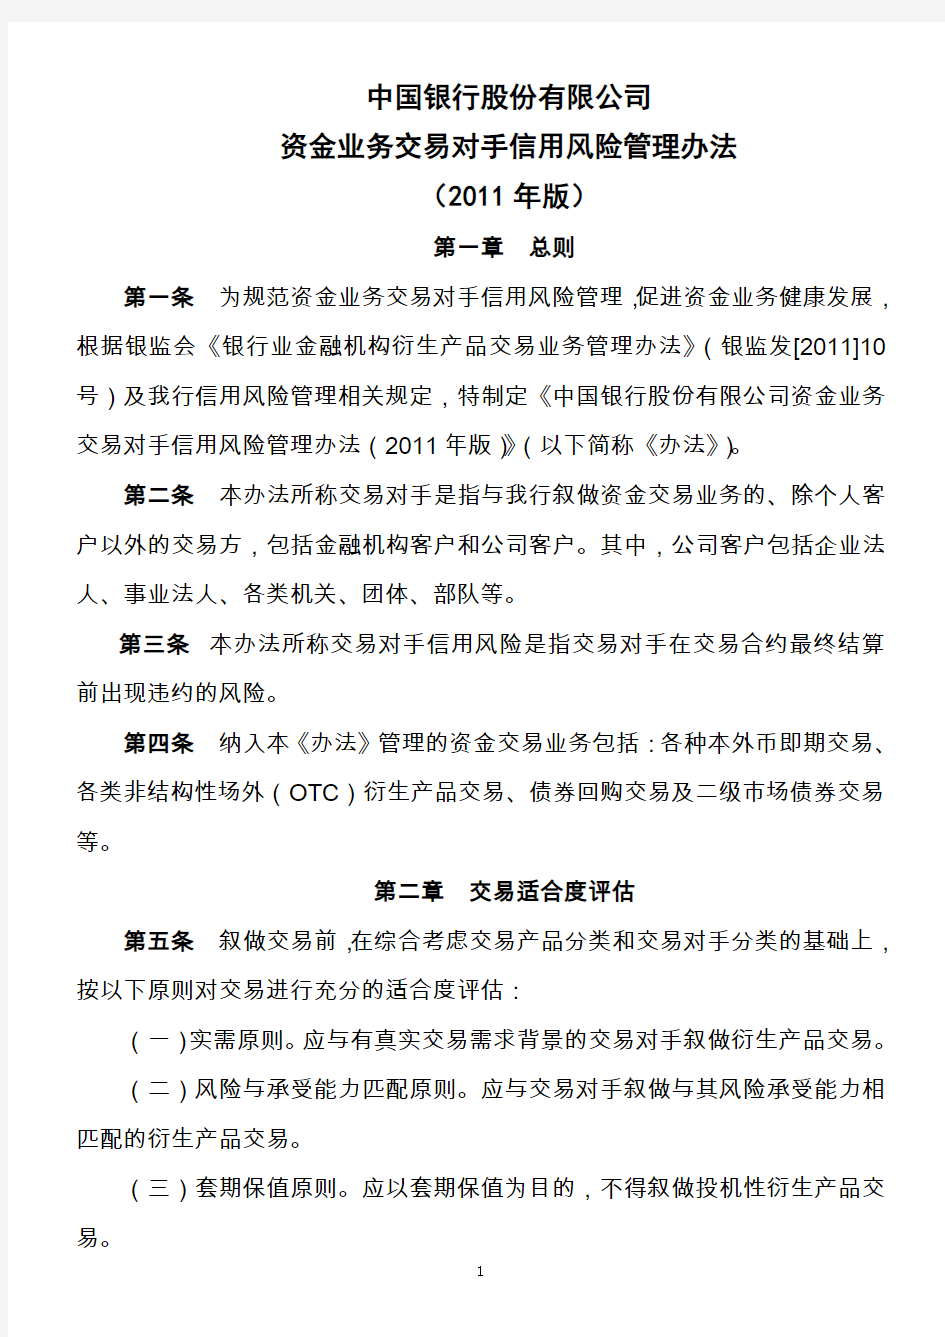 资金业务交易对手授信风险管理办法(2011年版)(中文版)